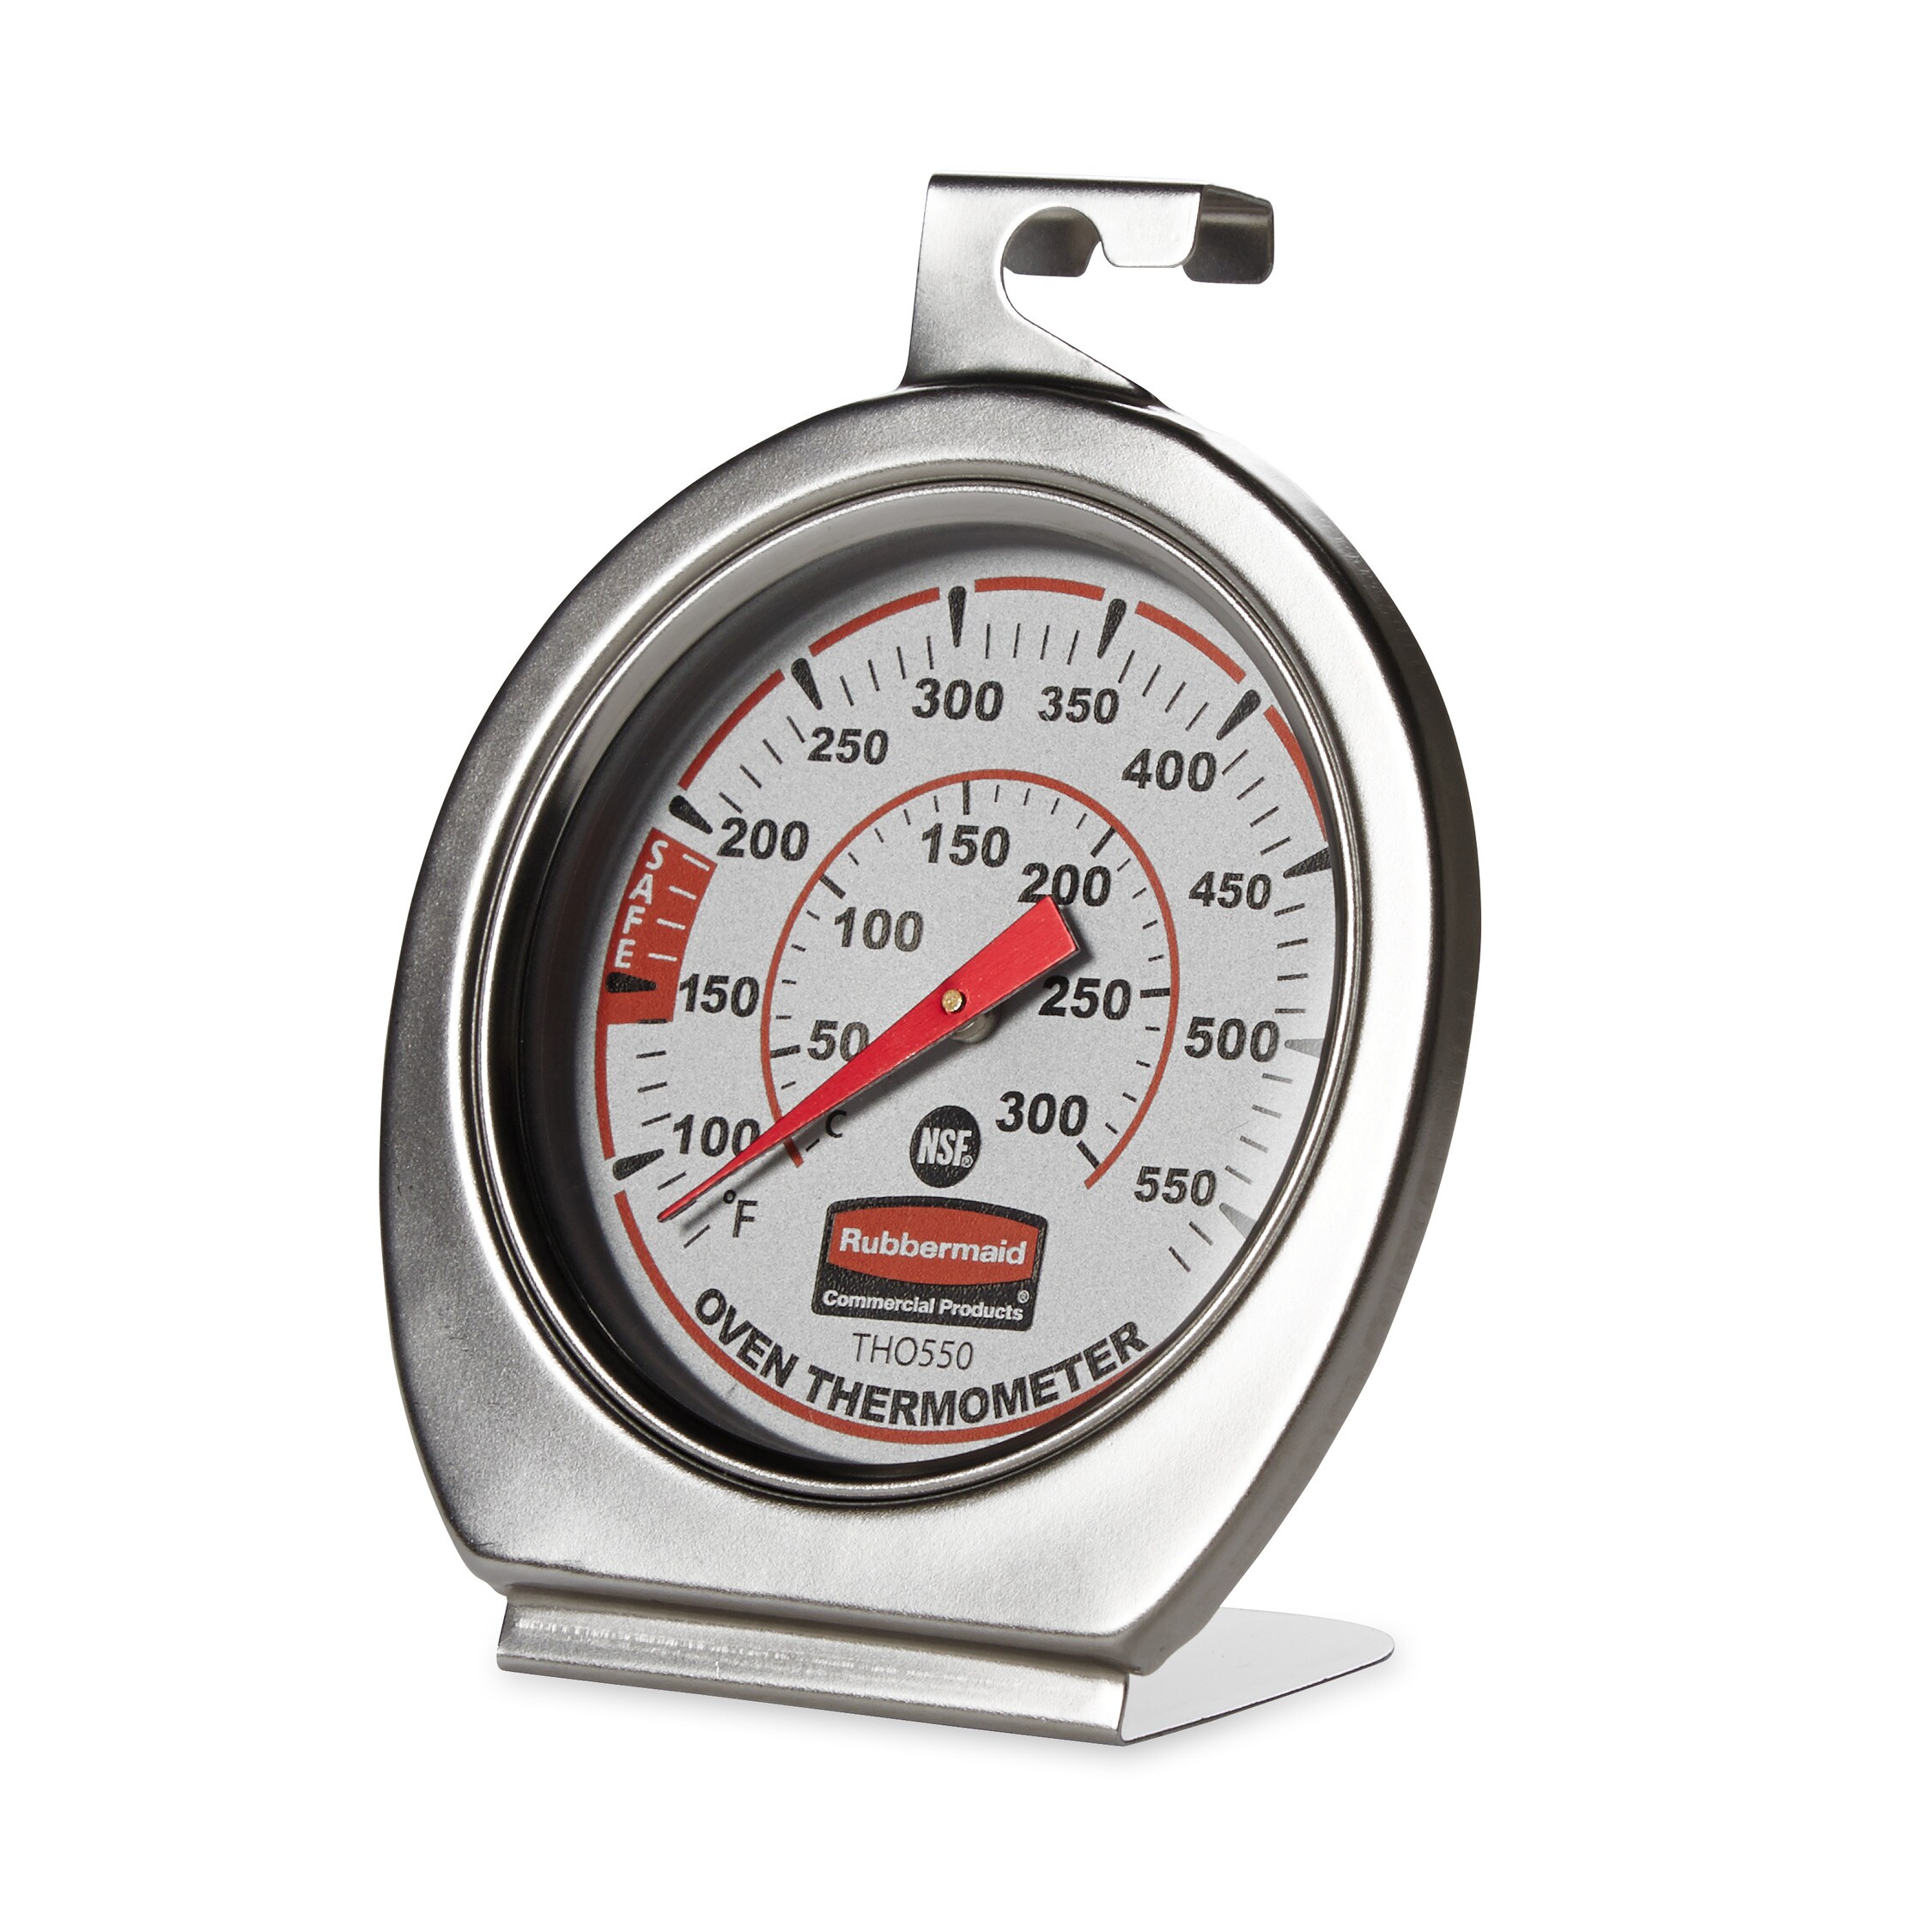 Gas Oven Thermometer - Buy Gas Oven Thermometer Product on